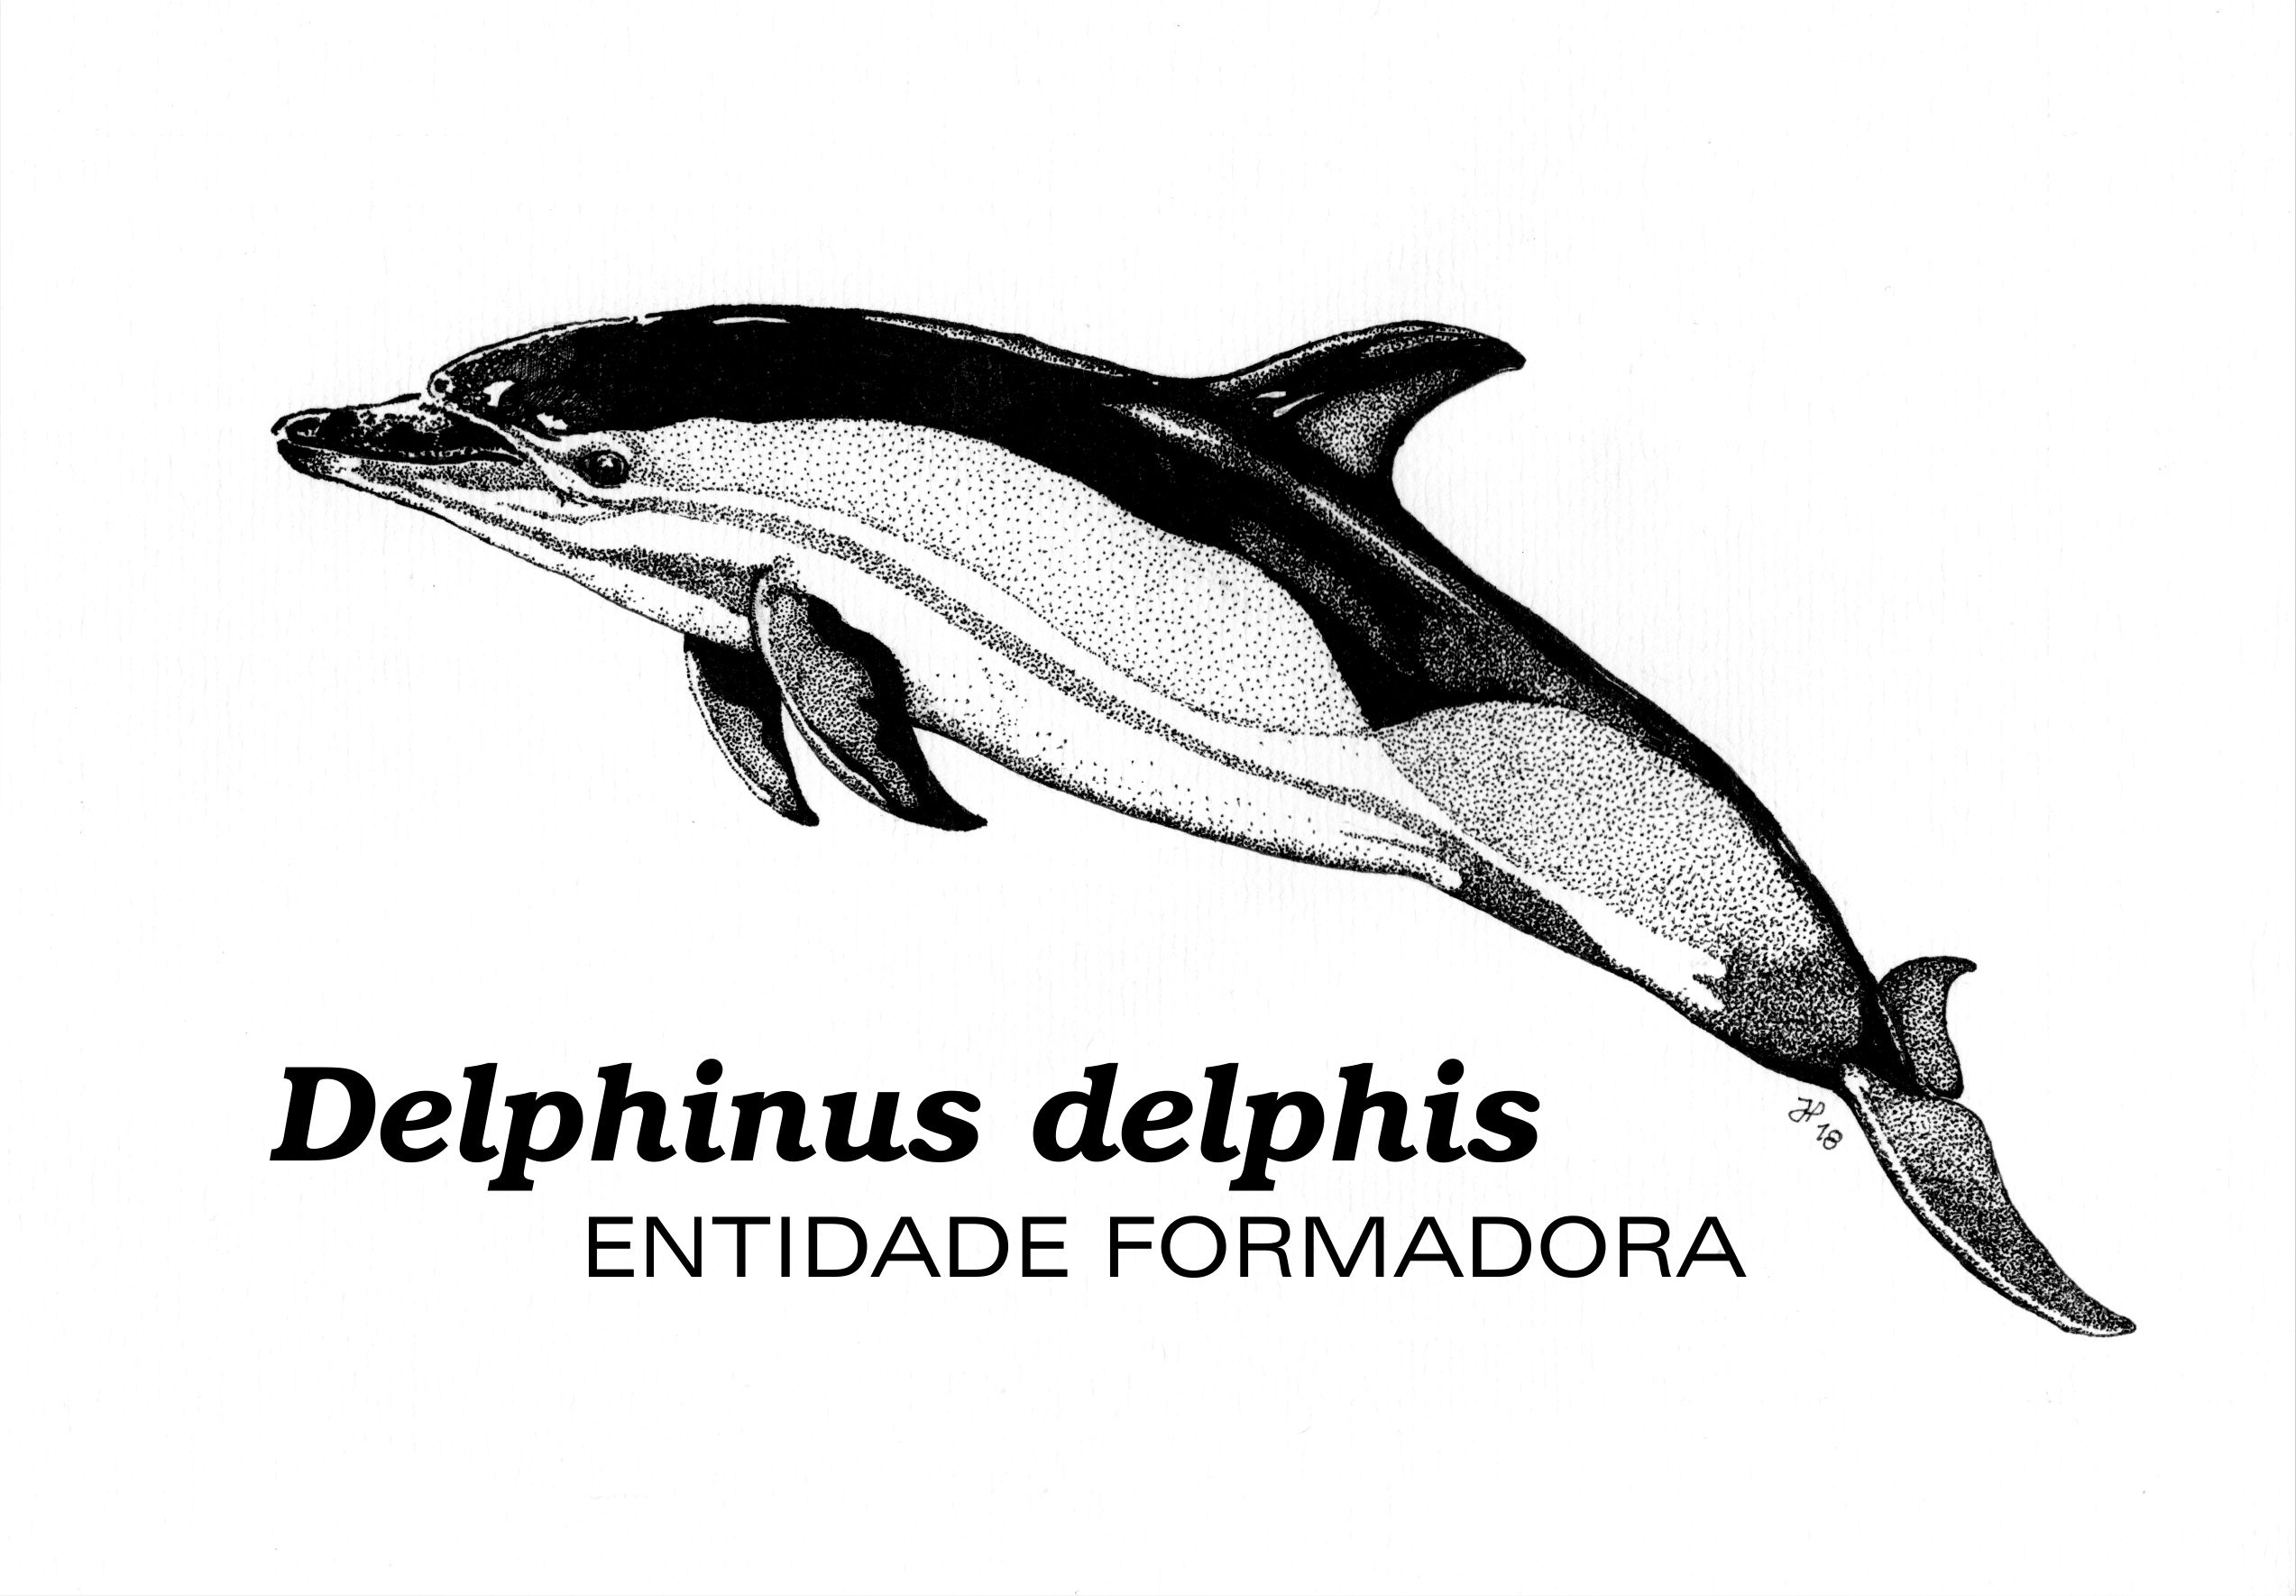 Delphinus